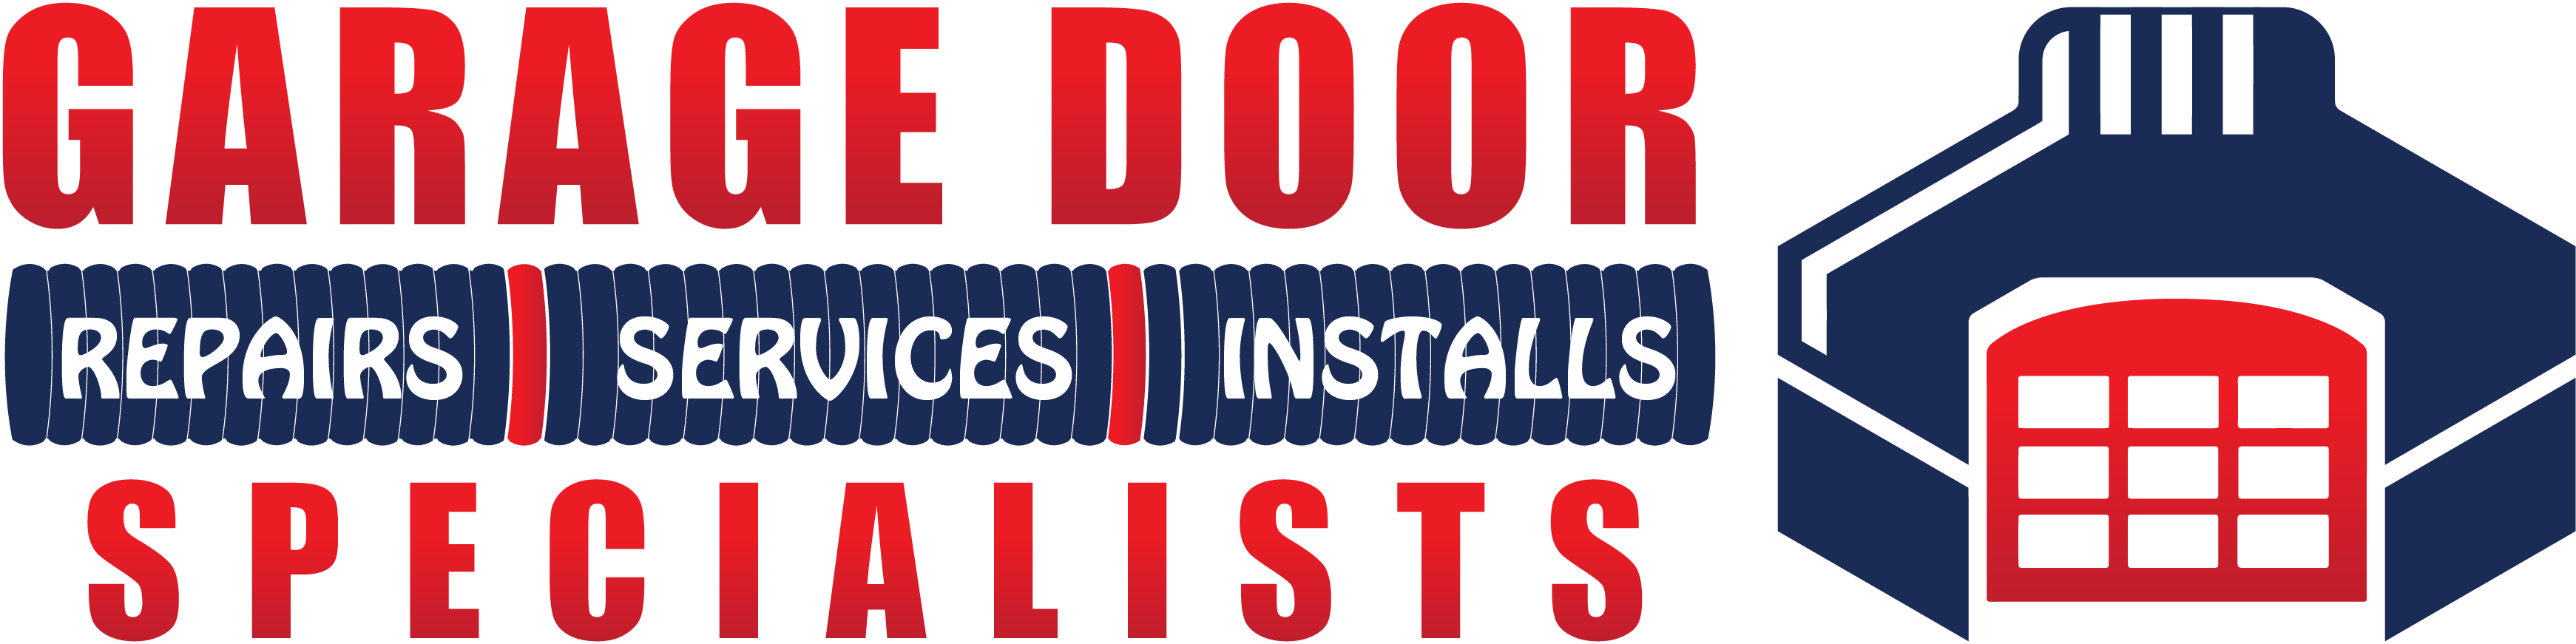 Garage Door Specialists Logo